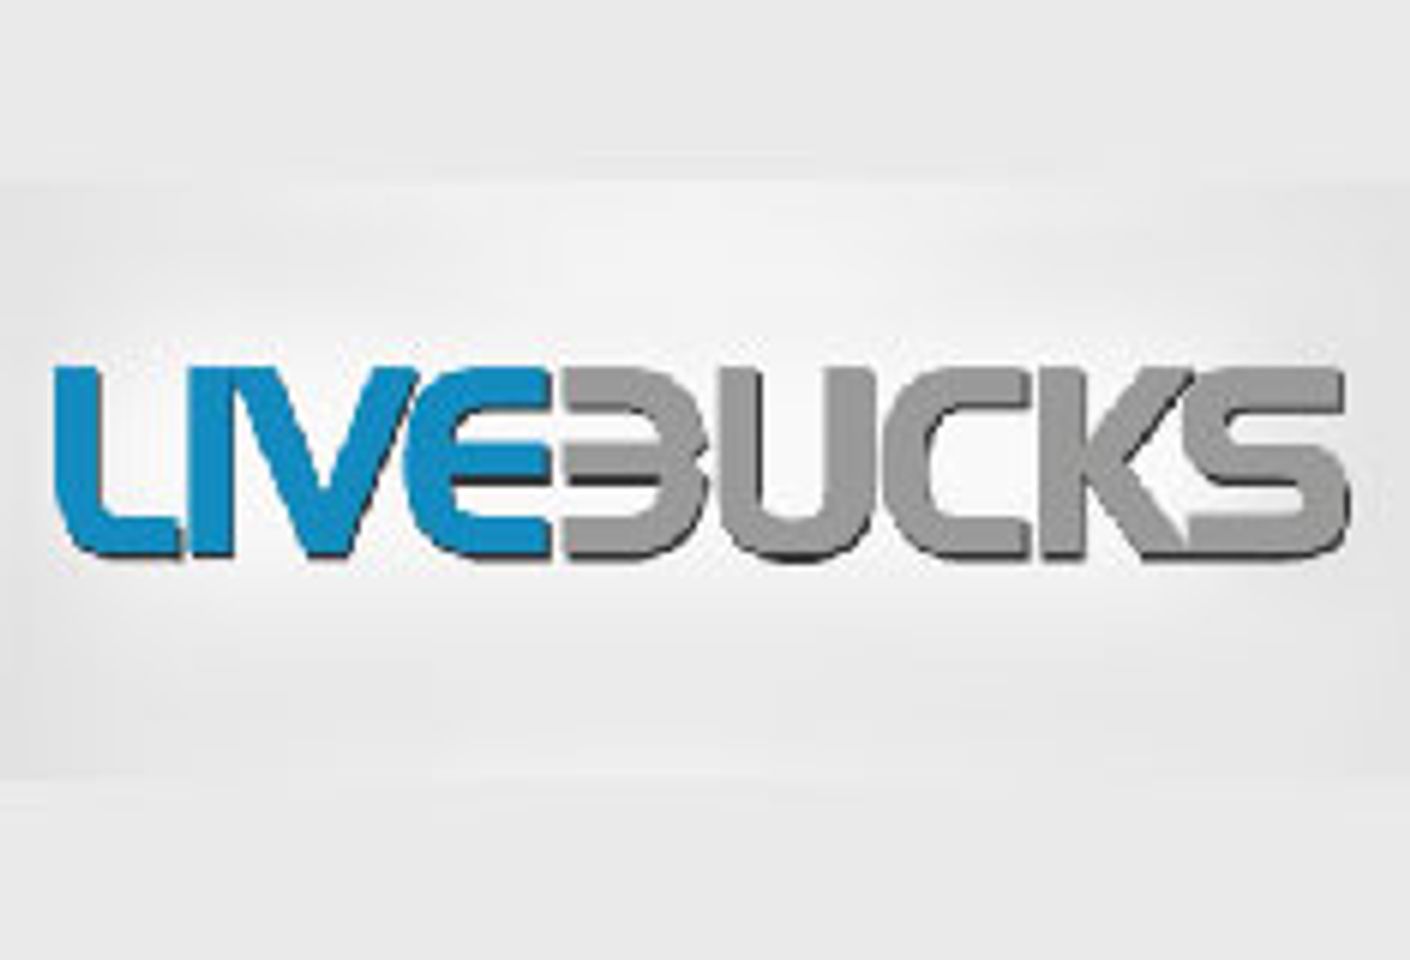 Gamma Entertainment Extends $150 PPS for LiveBucks Cam Affiliates